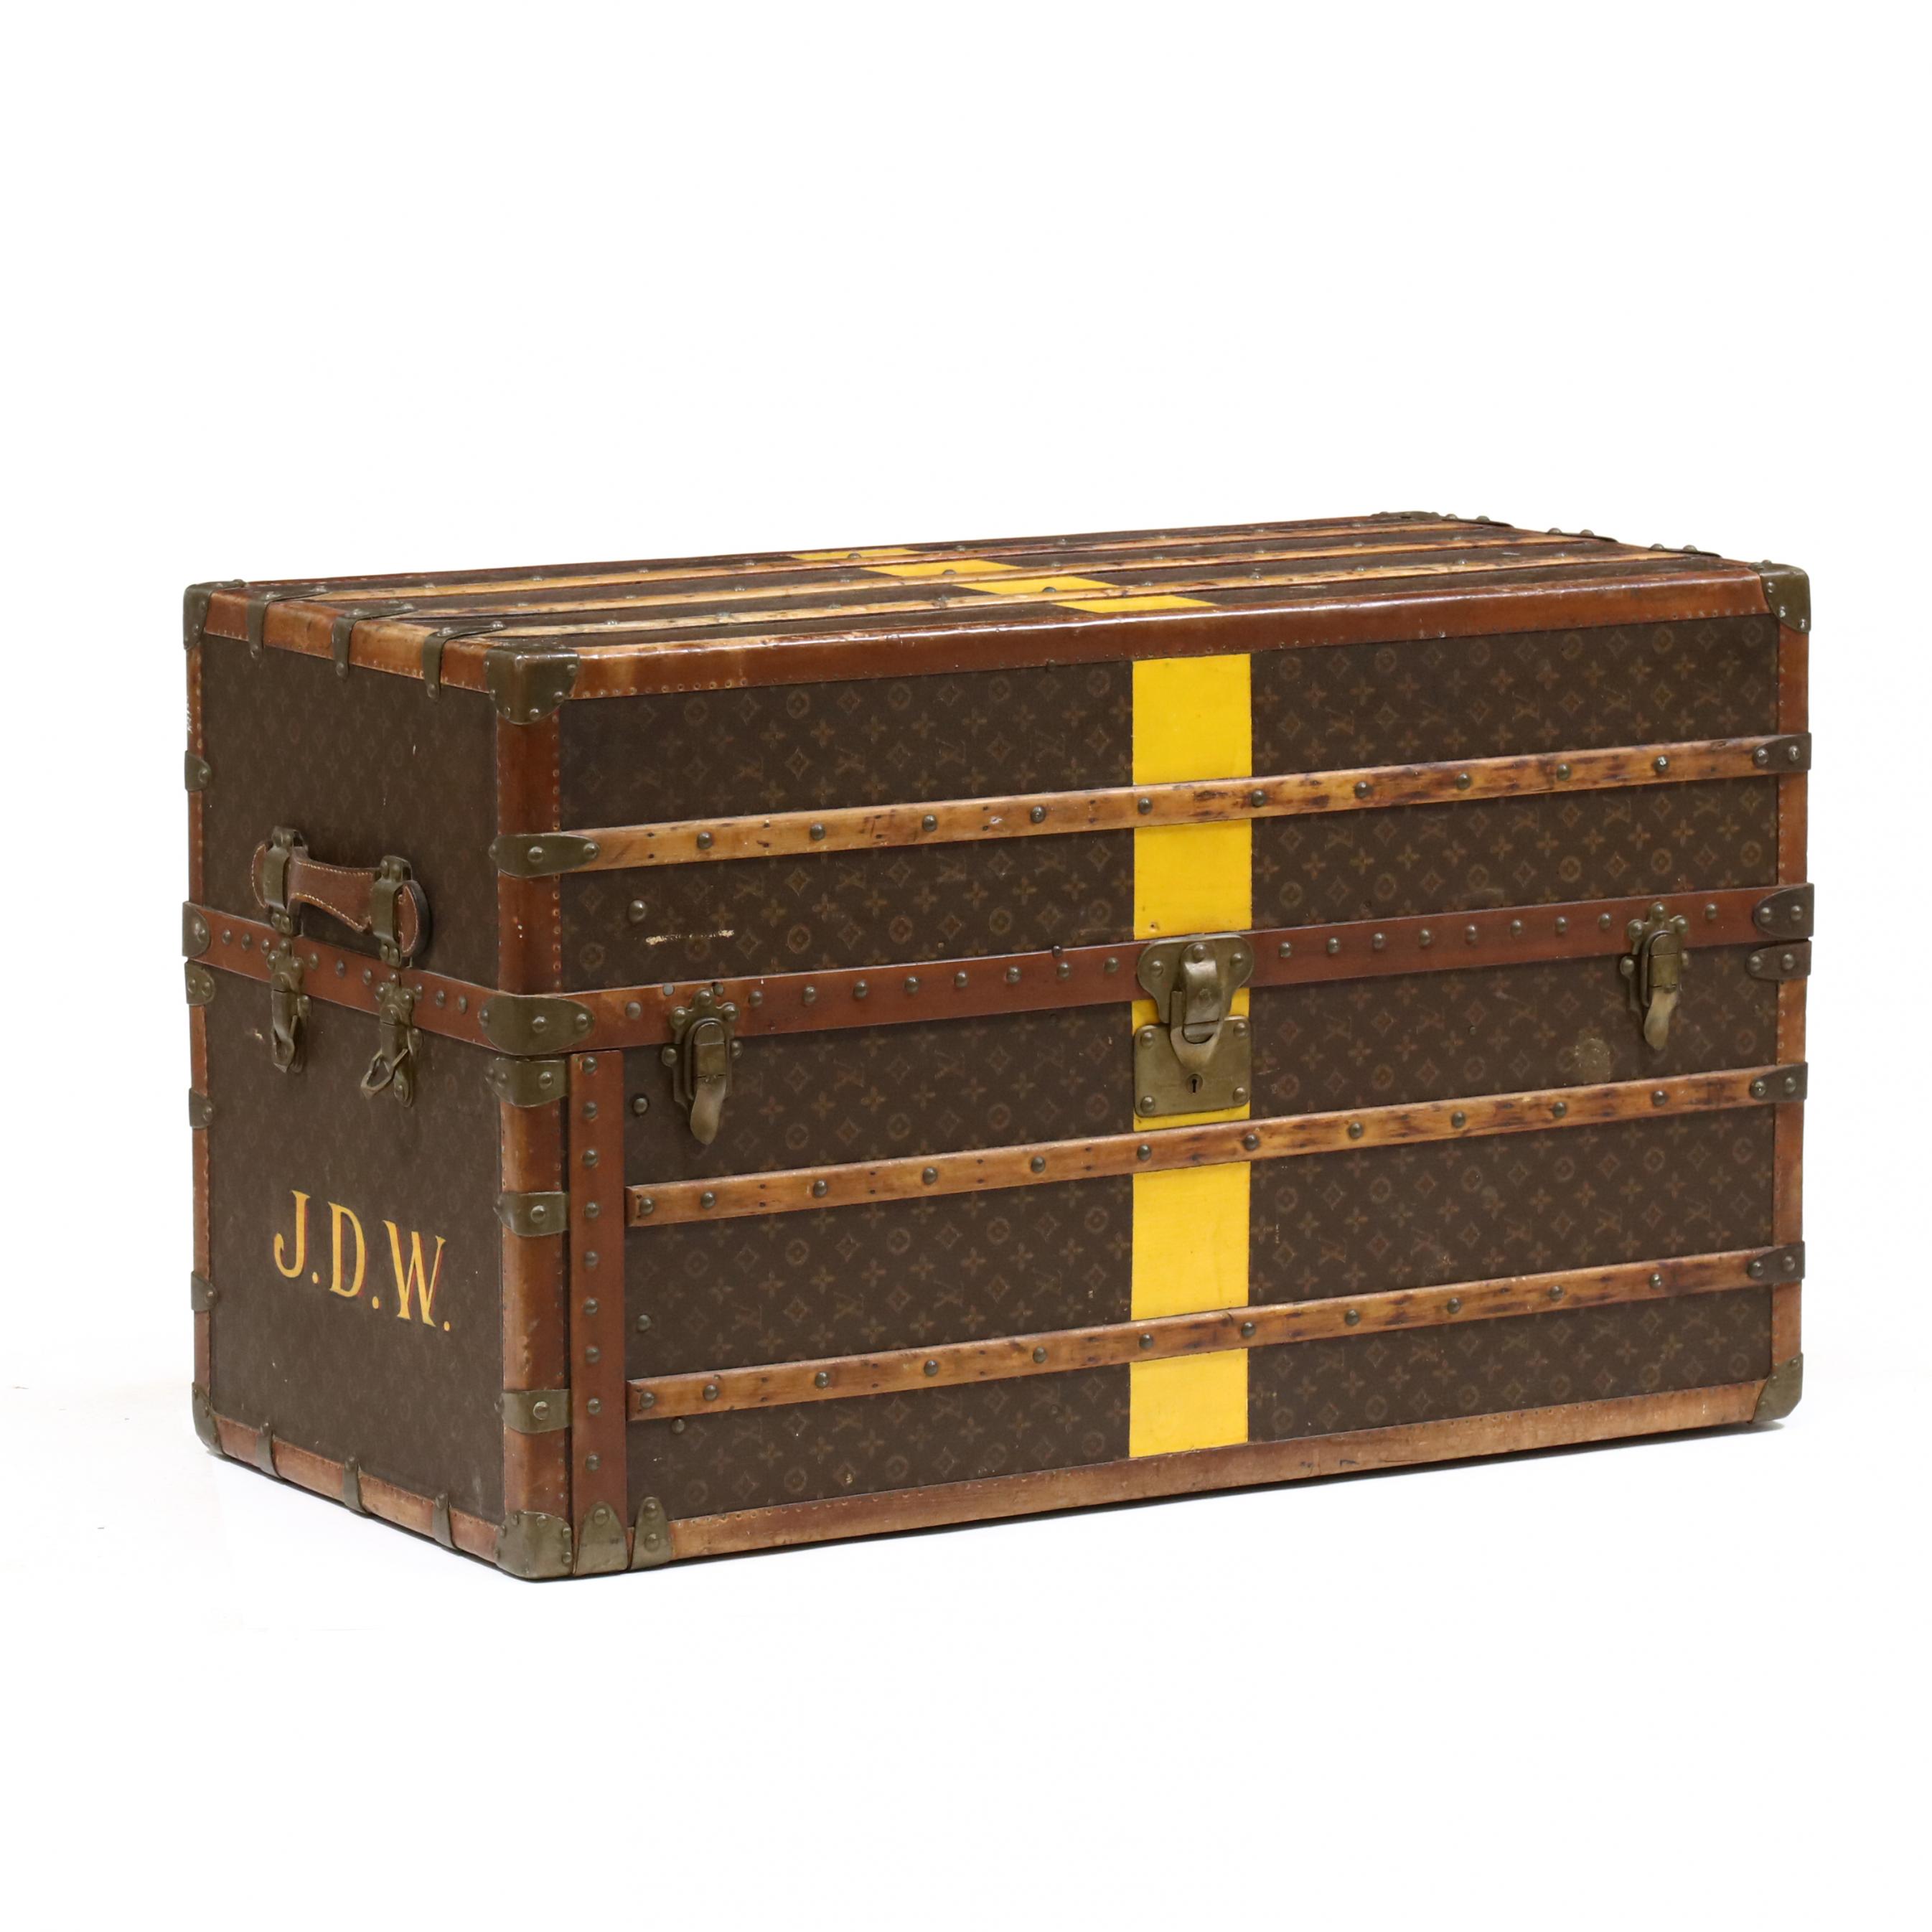 Louis Vuitton mail trunk, 1930 Louis Vuitton mail trunk, old trunk louis  vuitton